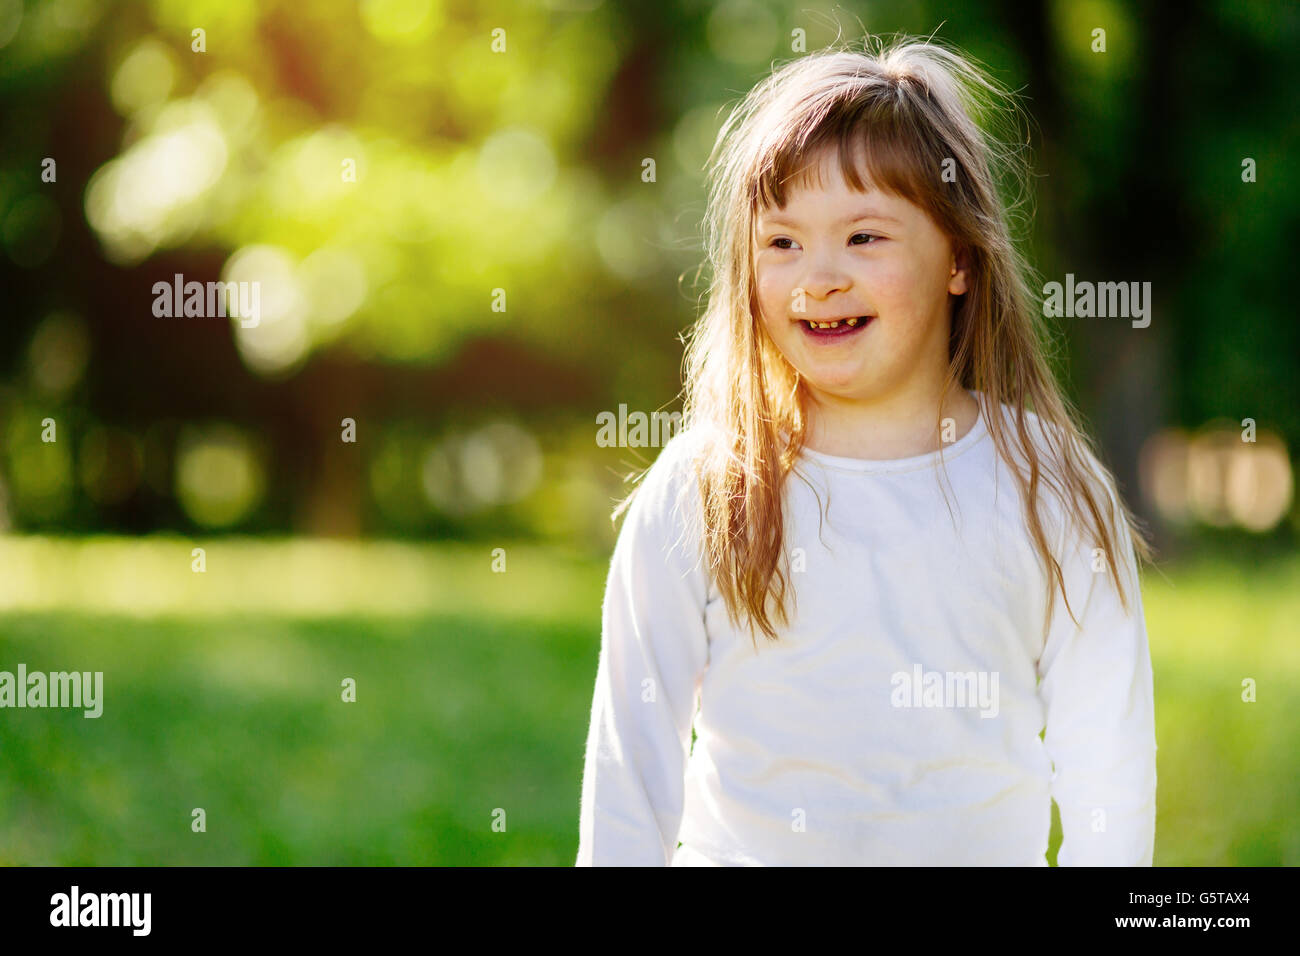 Belle heureux enfant souffrant de syndrome de Down smiling outdoors Banque D'Images